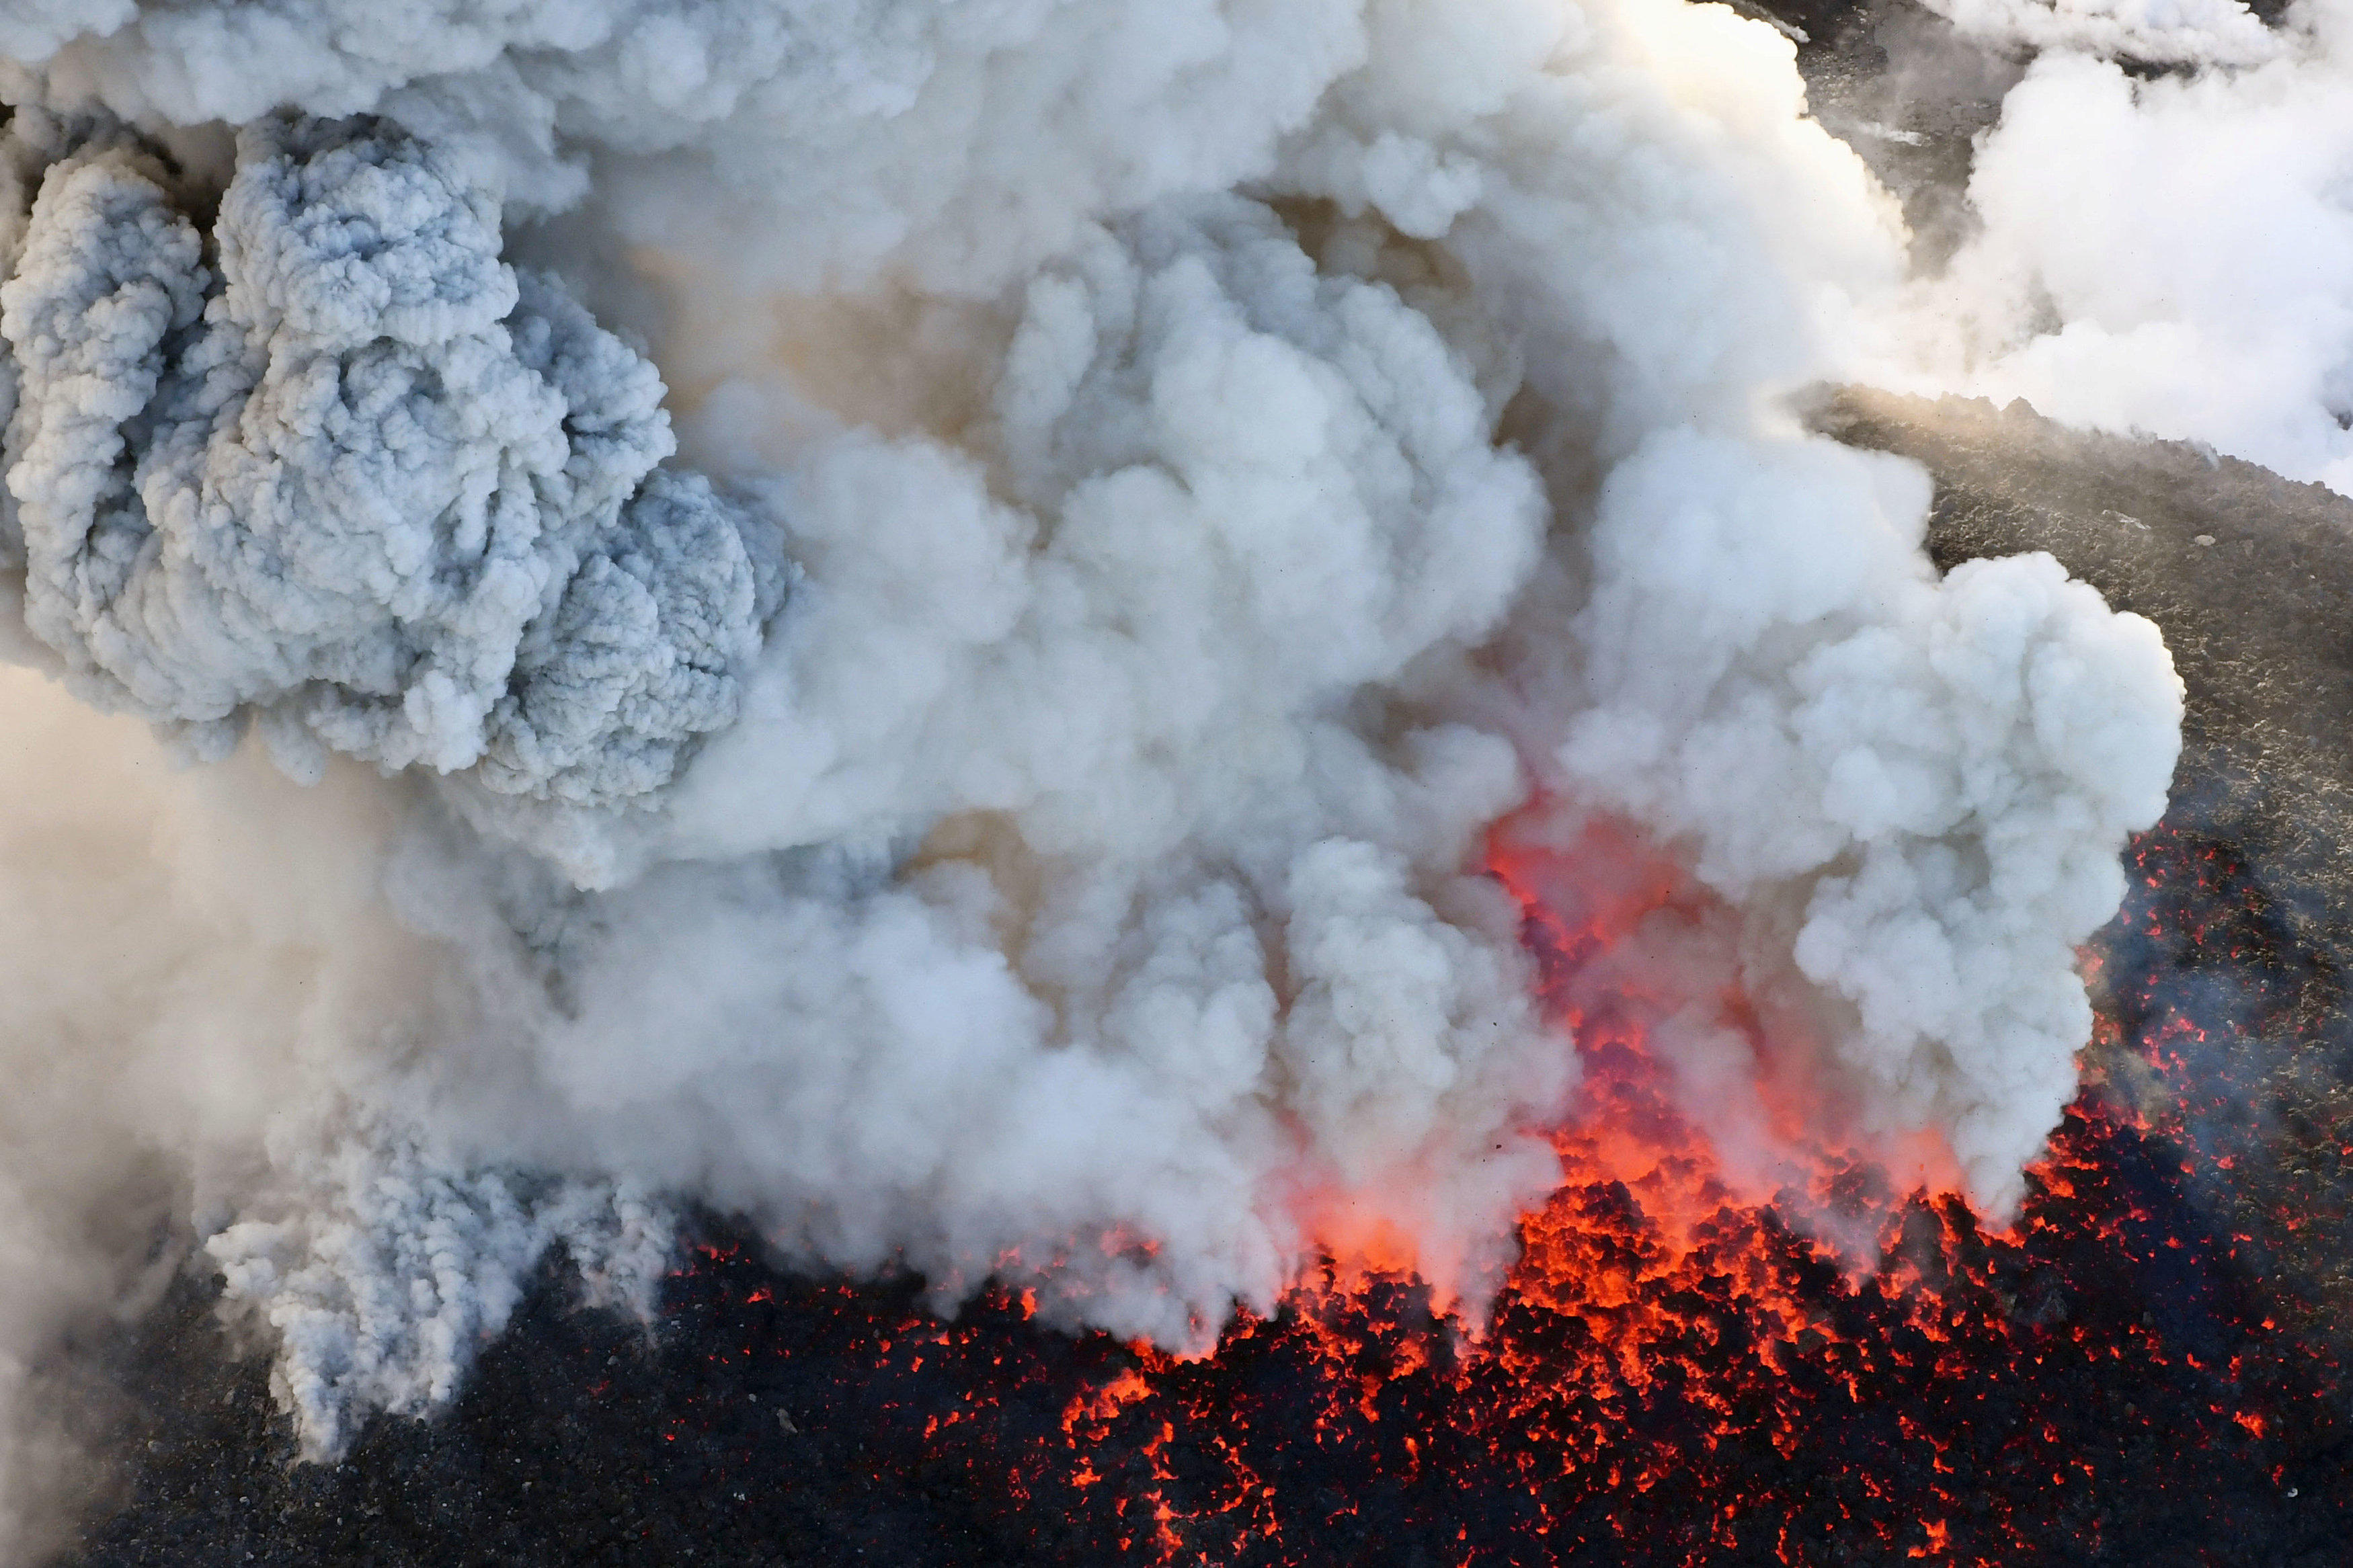 Japan's Shinmoedake volcano spews ash, lava in strongest eruption in